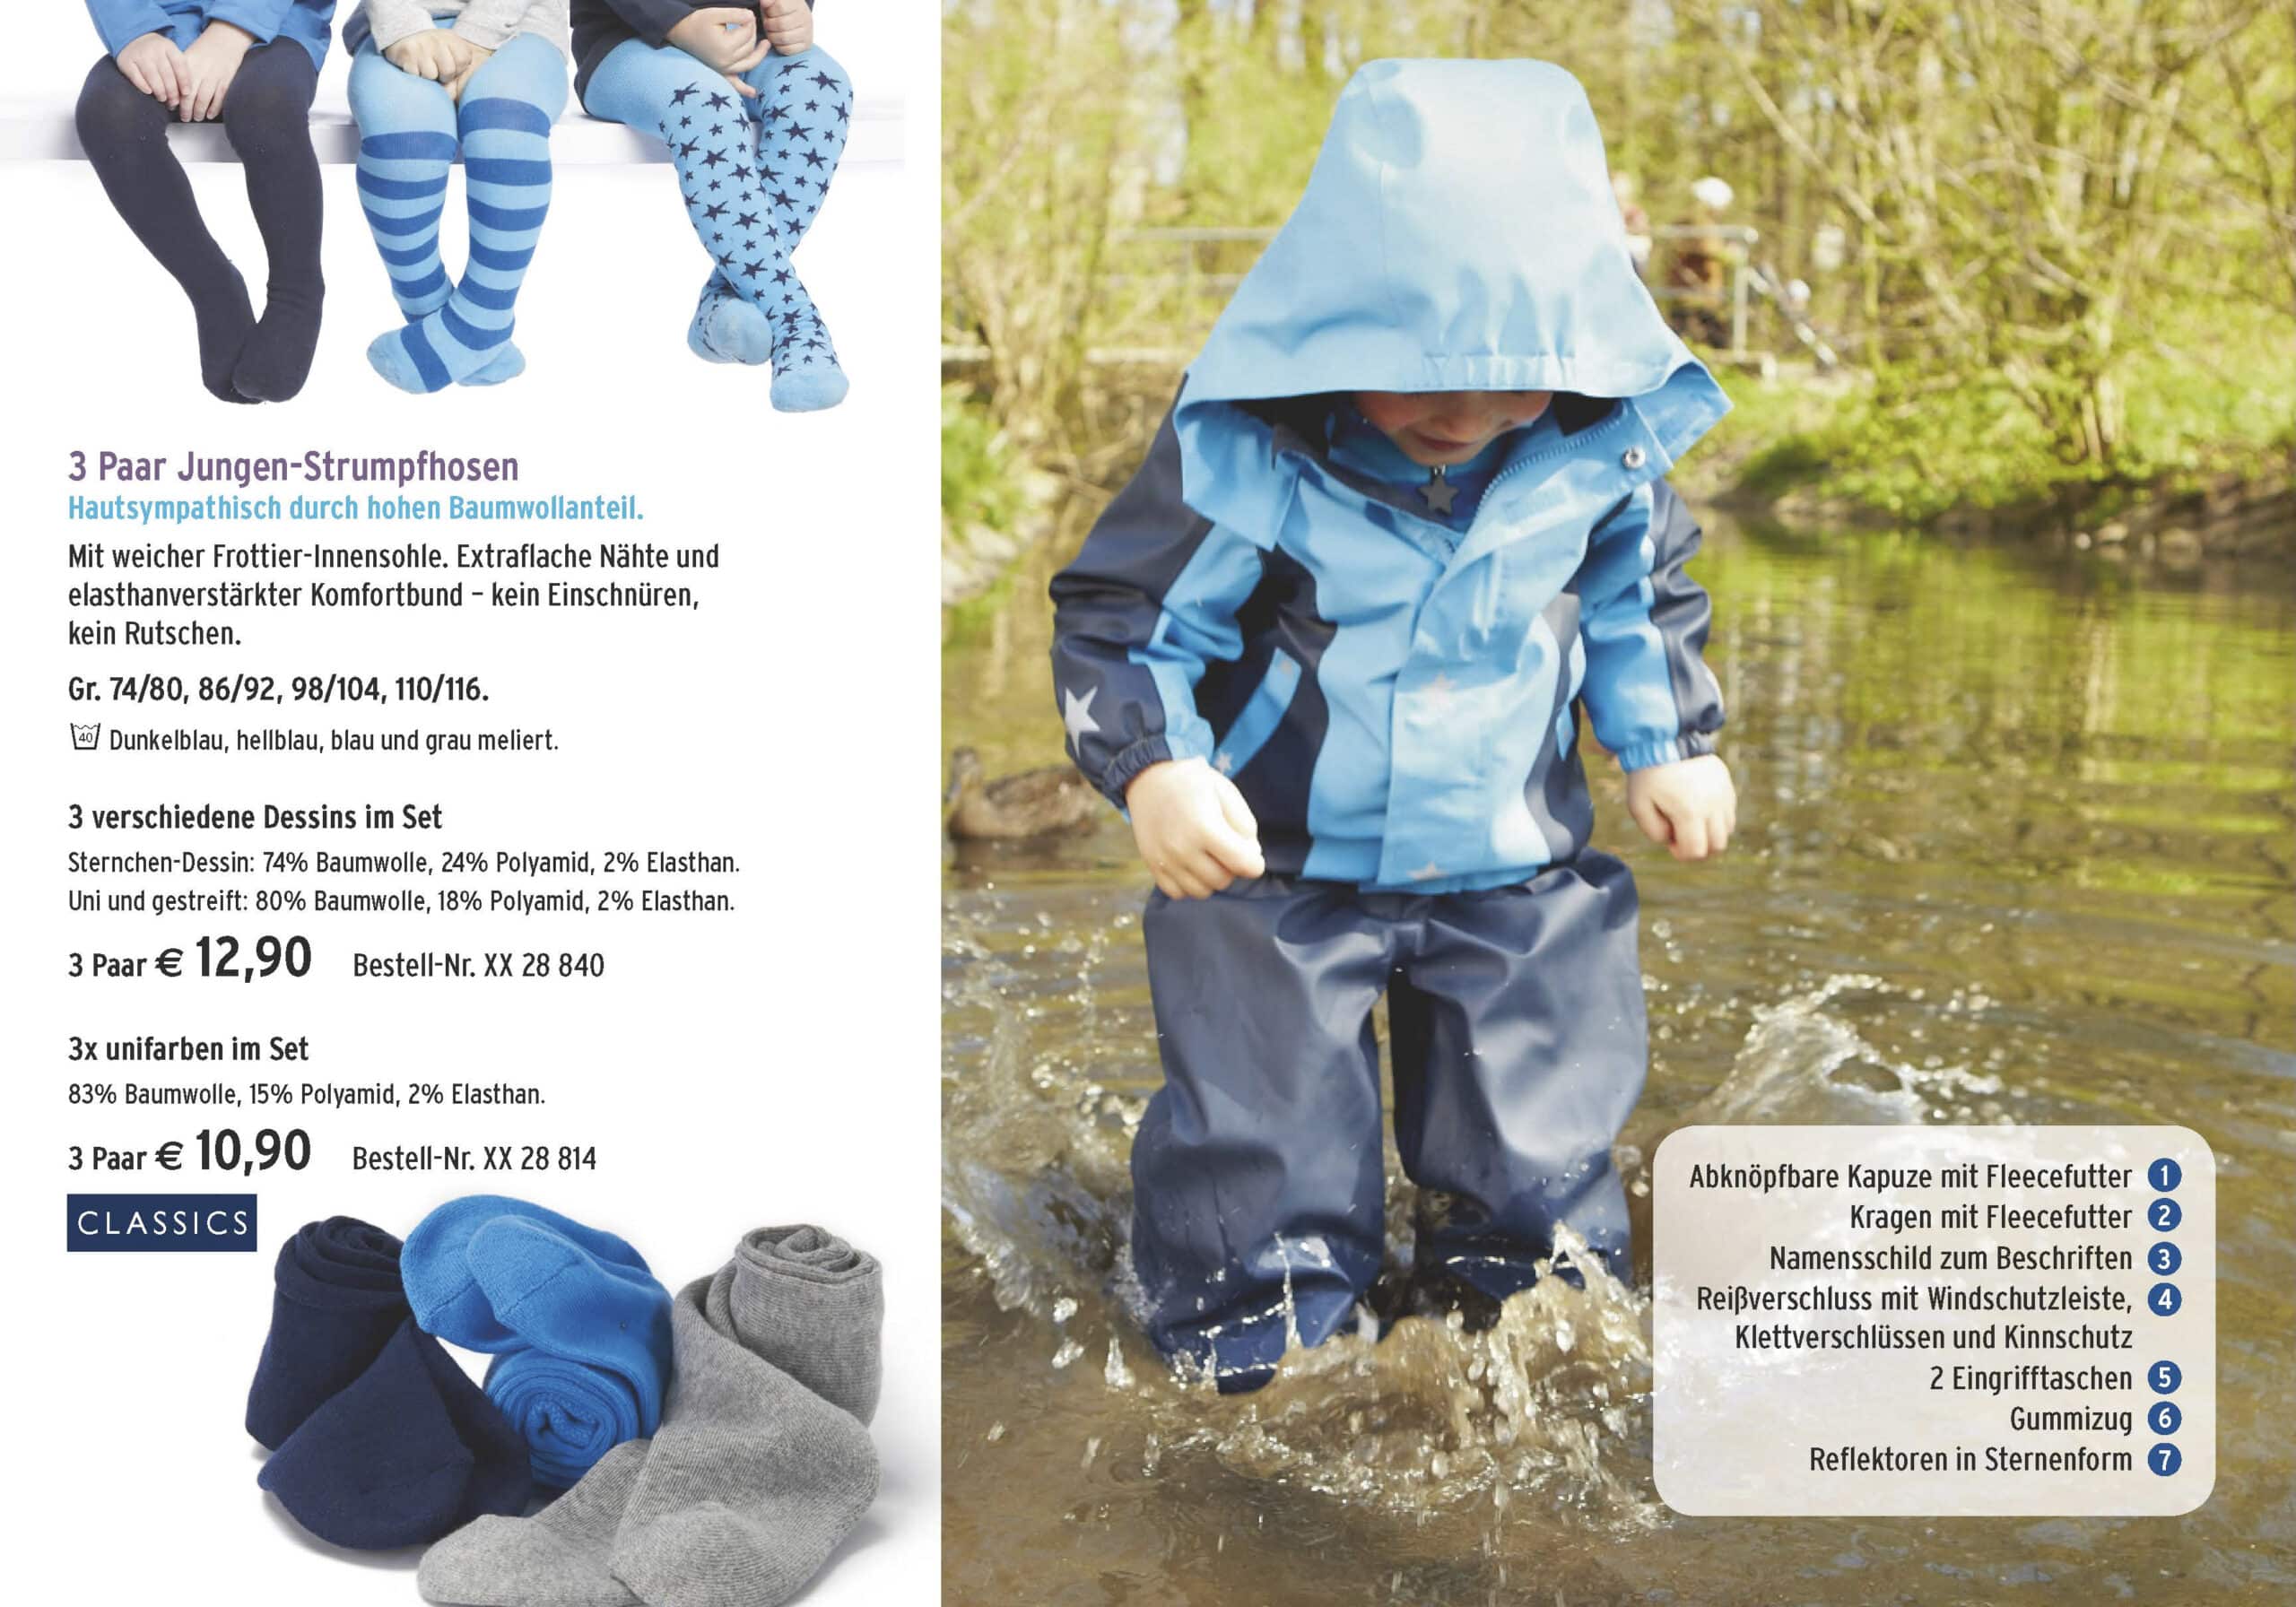 Ein kleines Kind trägt einen blauen Regenmantel mit hochgeklappter Kapuze, hockt auf einer nassen Oberfläche und planscht in einer kleinen Wasserpfütze. Links ist eine Werbung für Kinderbeinbekleidung zu sehen. © Fotografie Tomas Rodriguez